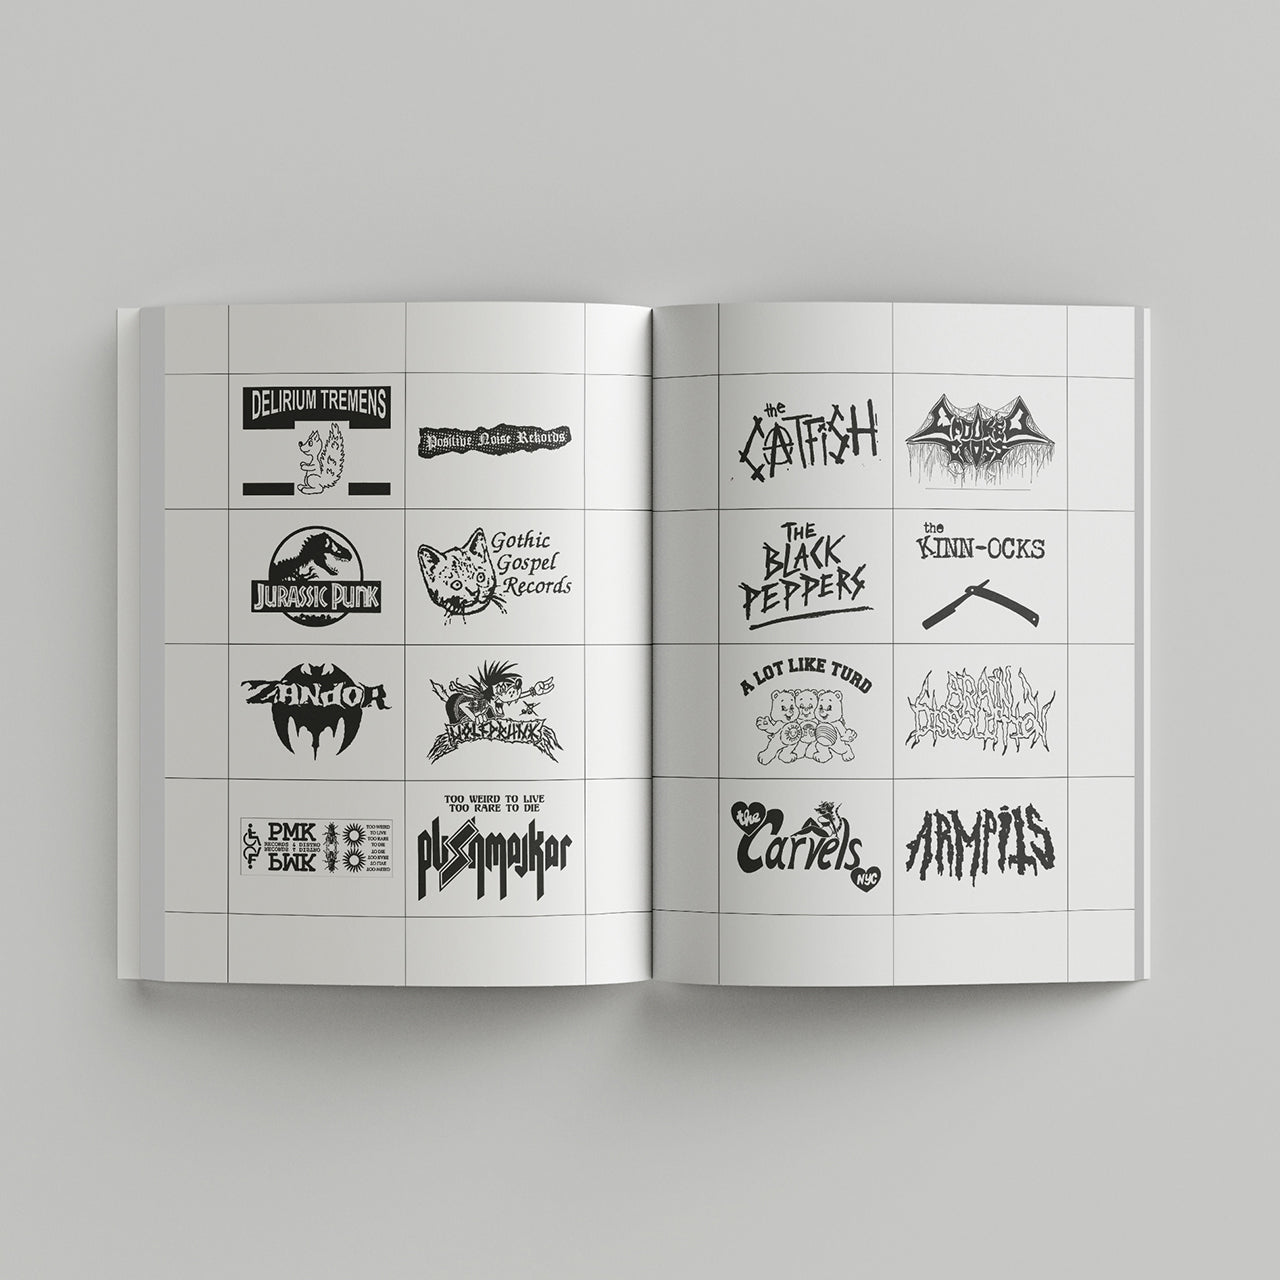 Book - Punk Logos